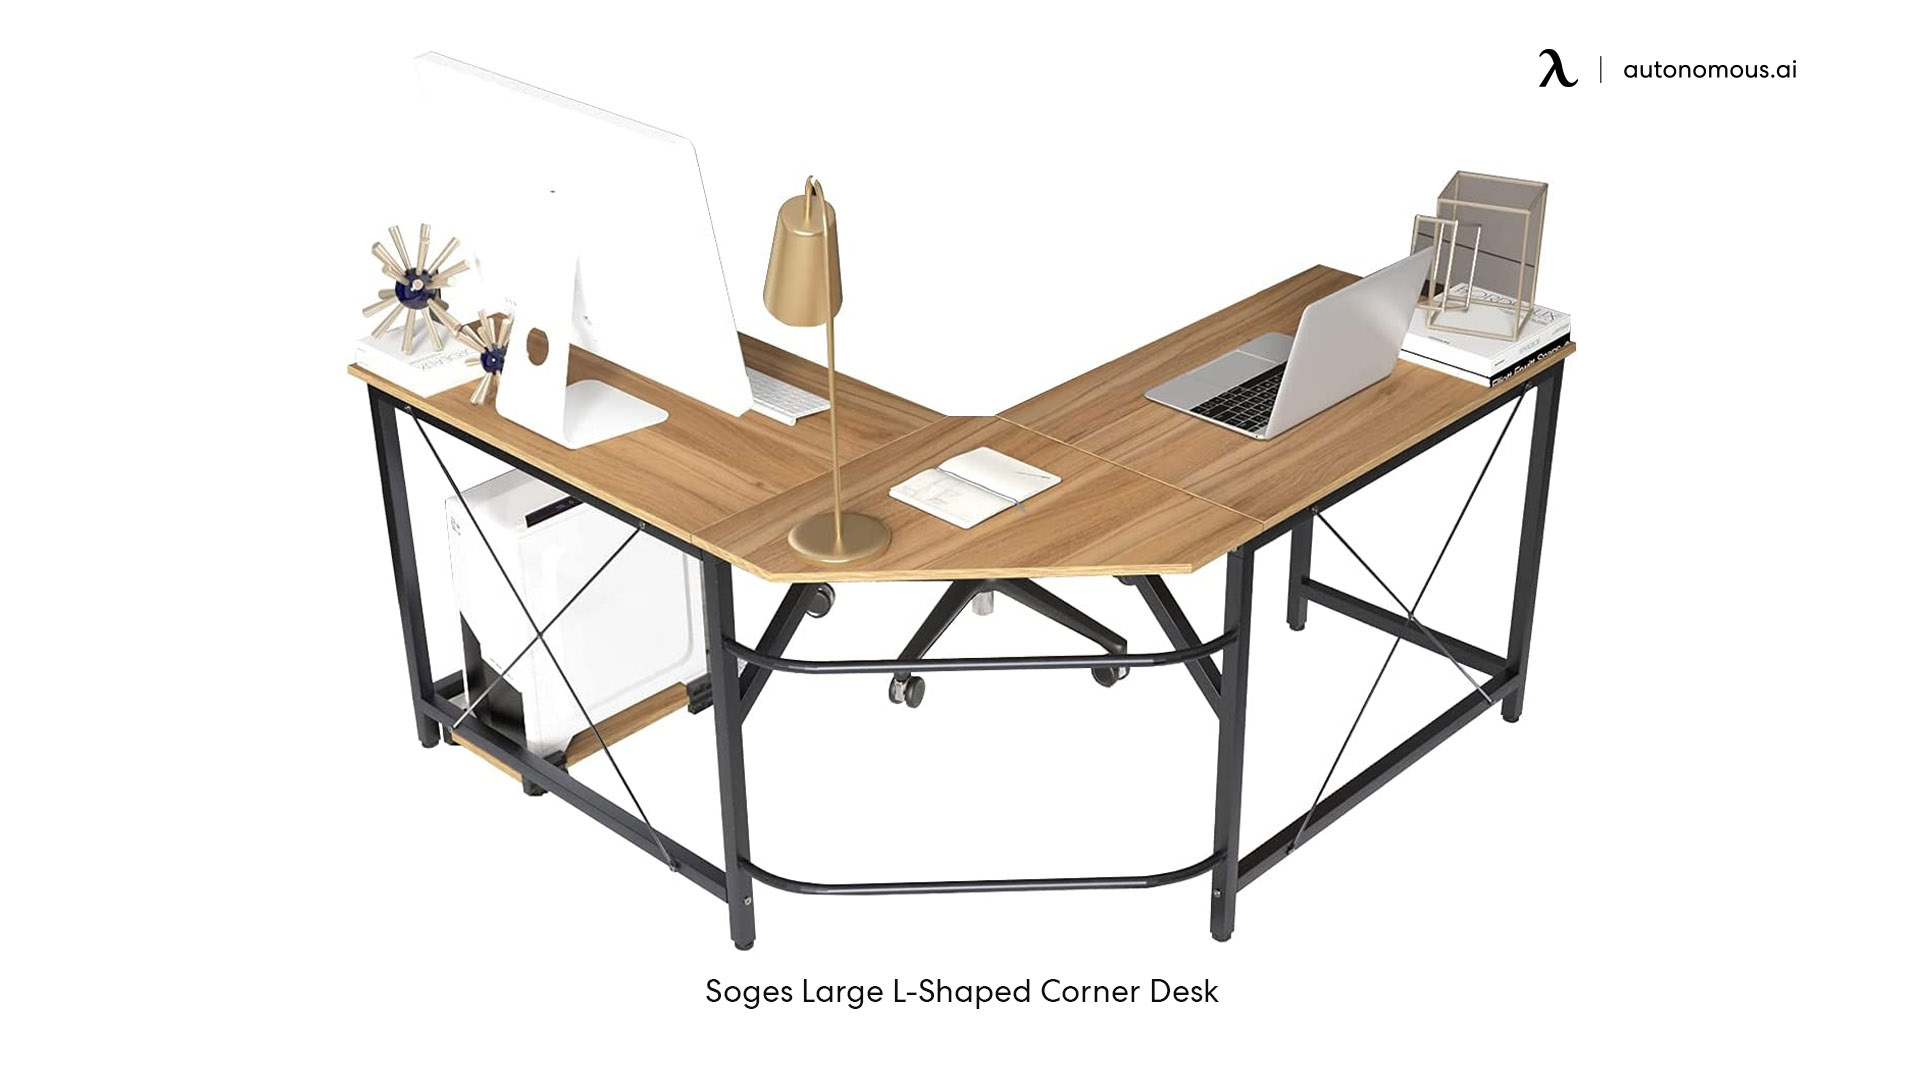 Soges Large L-Shaped Corner Desk